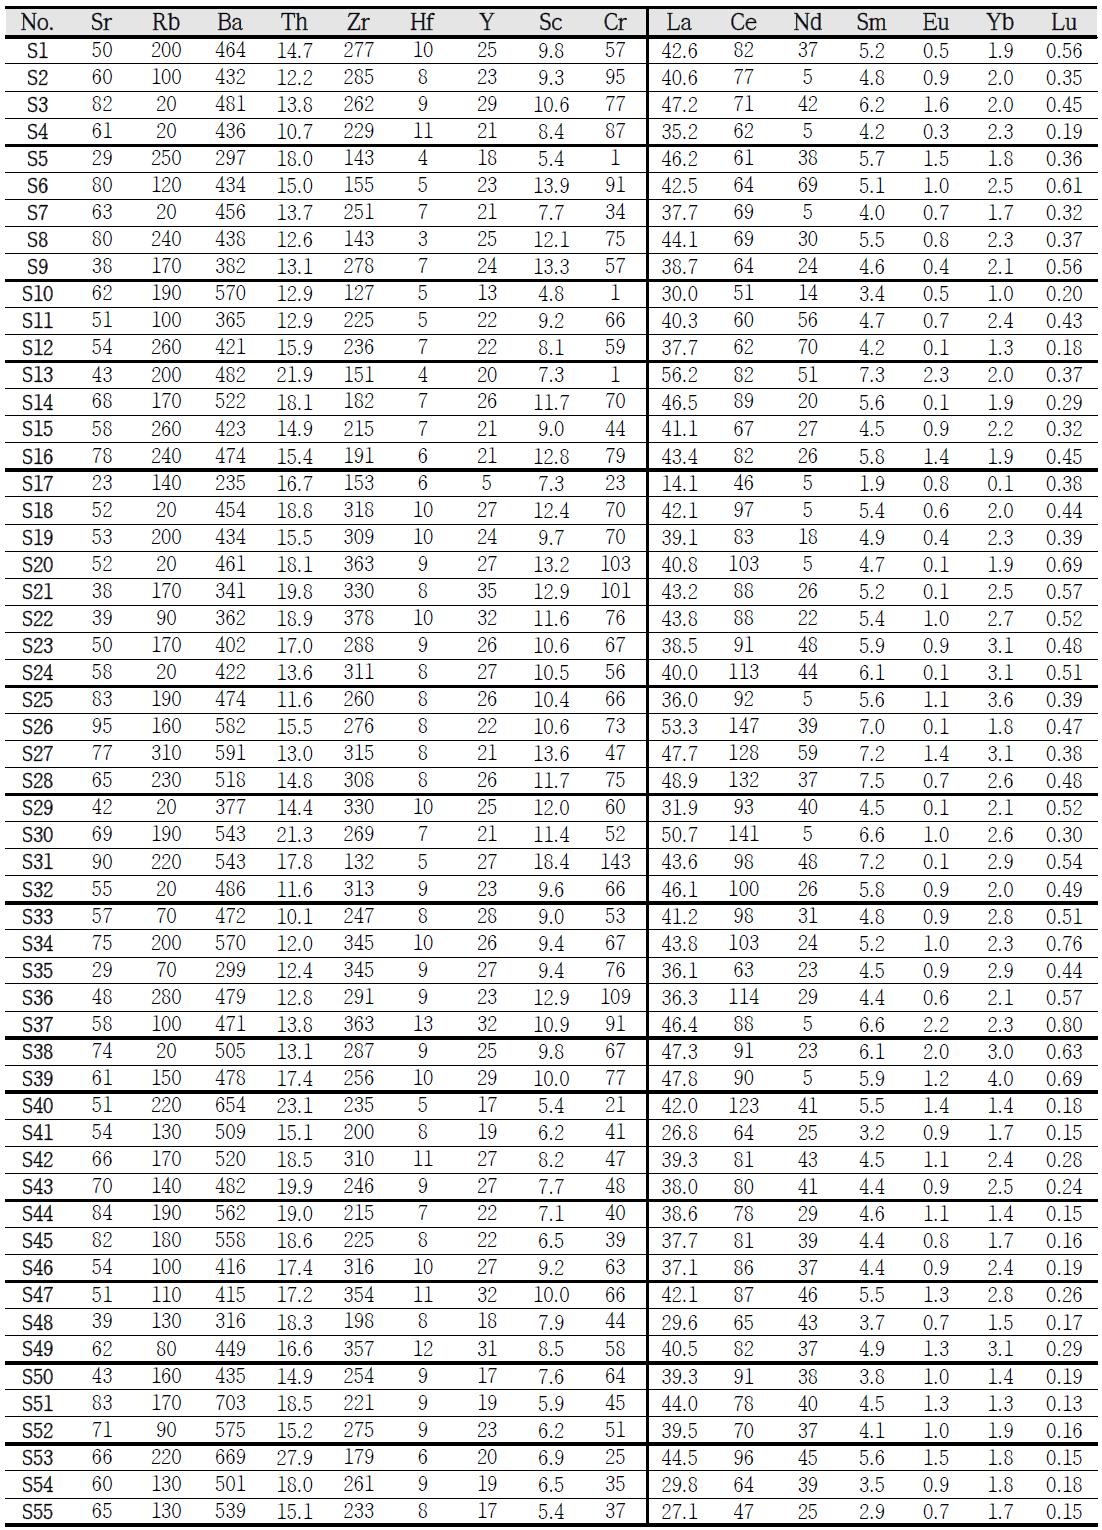 영산강유역 옹관고분 일대 토양의 미량 및 희토류원소 함량(ppm)(시료번호는 Table 30과 같음).